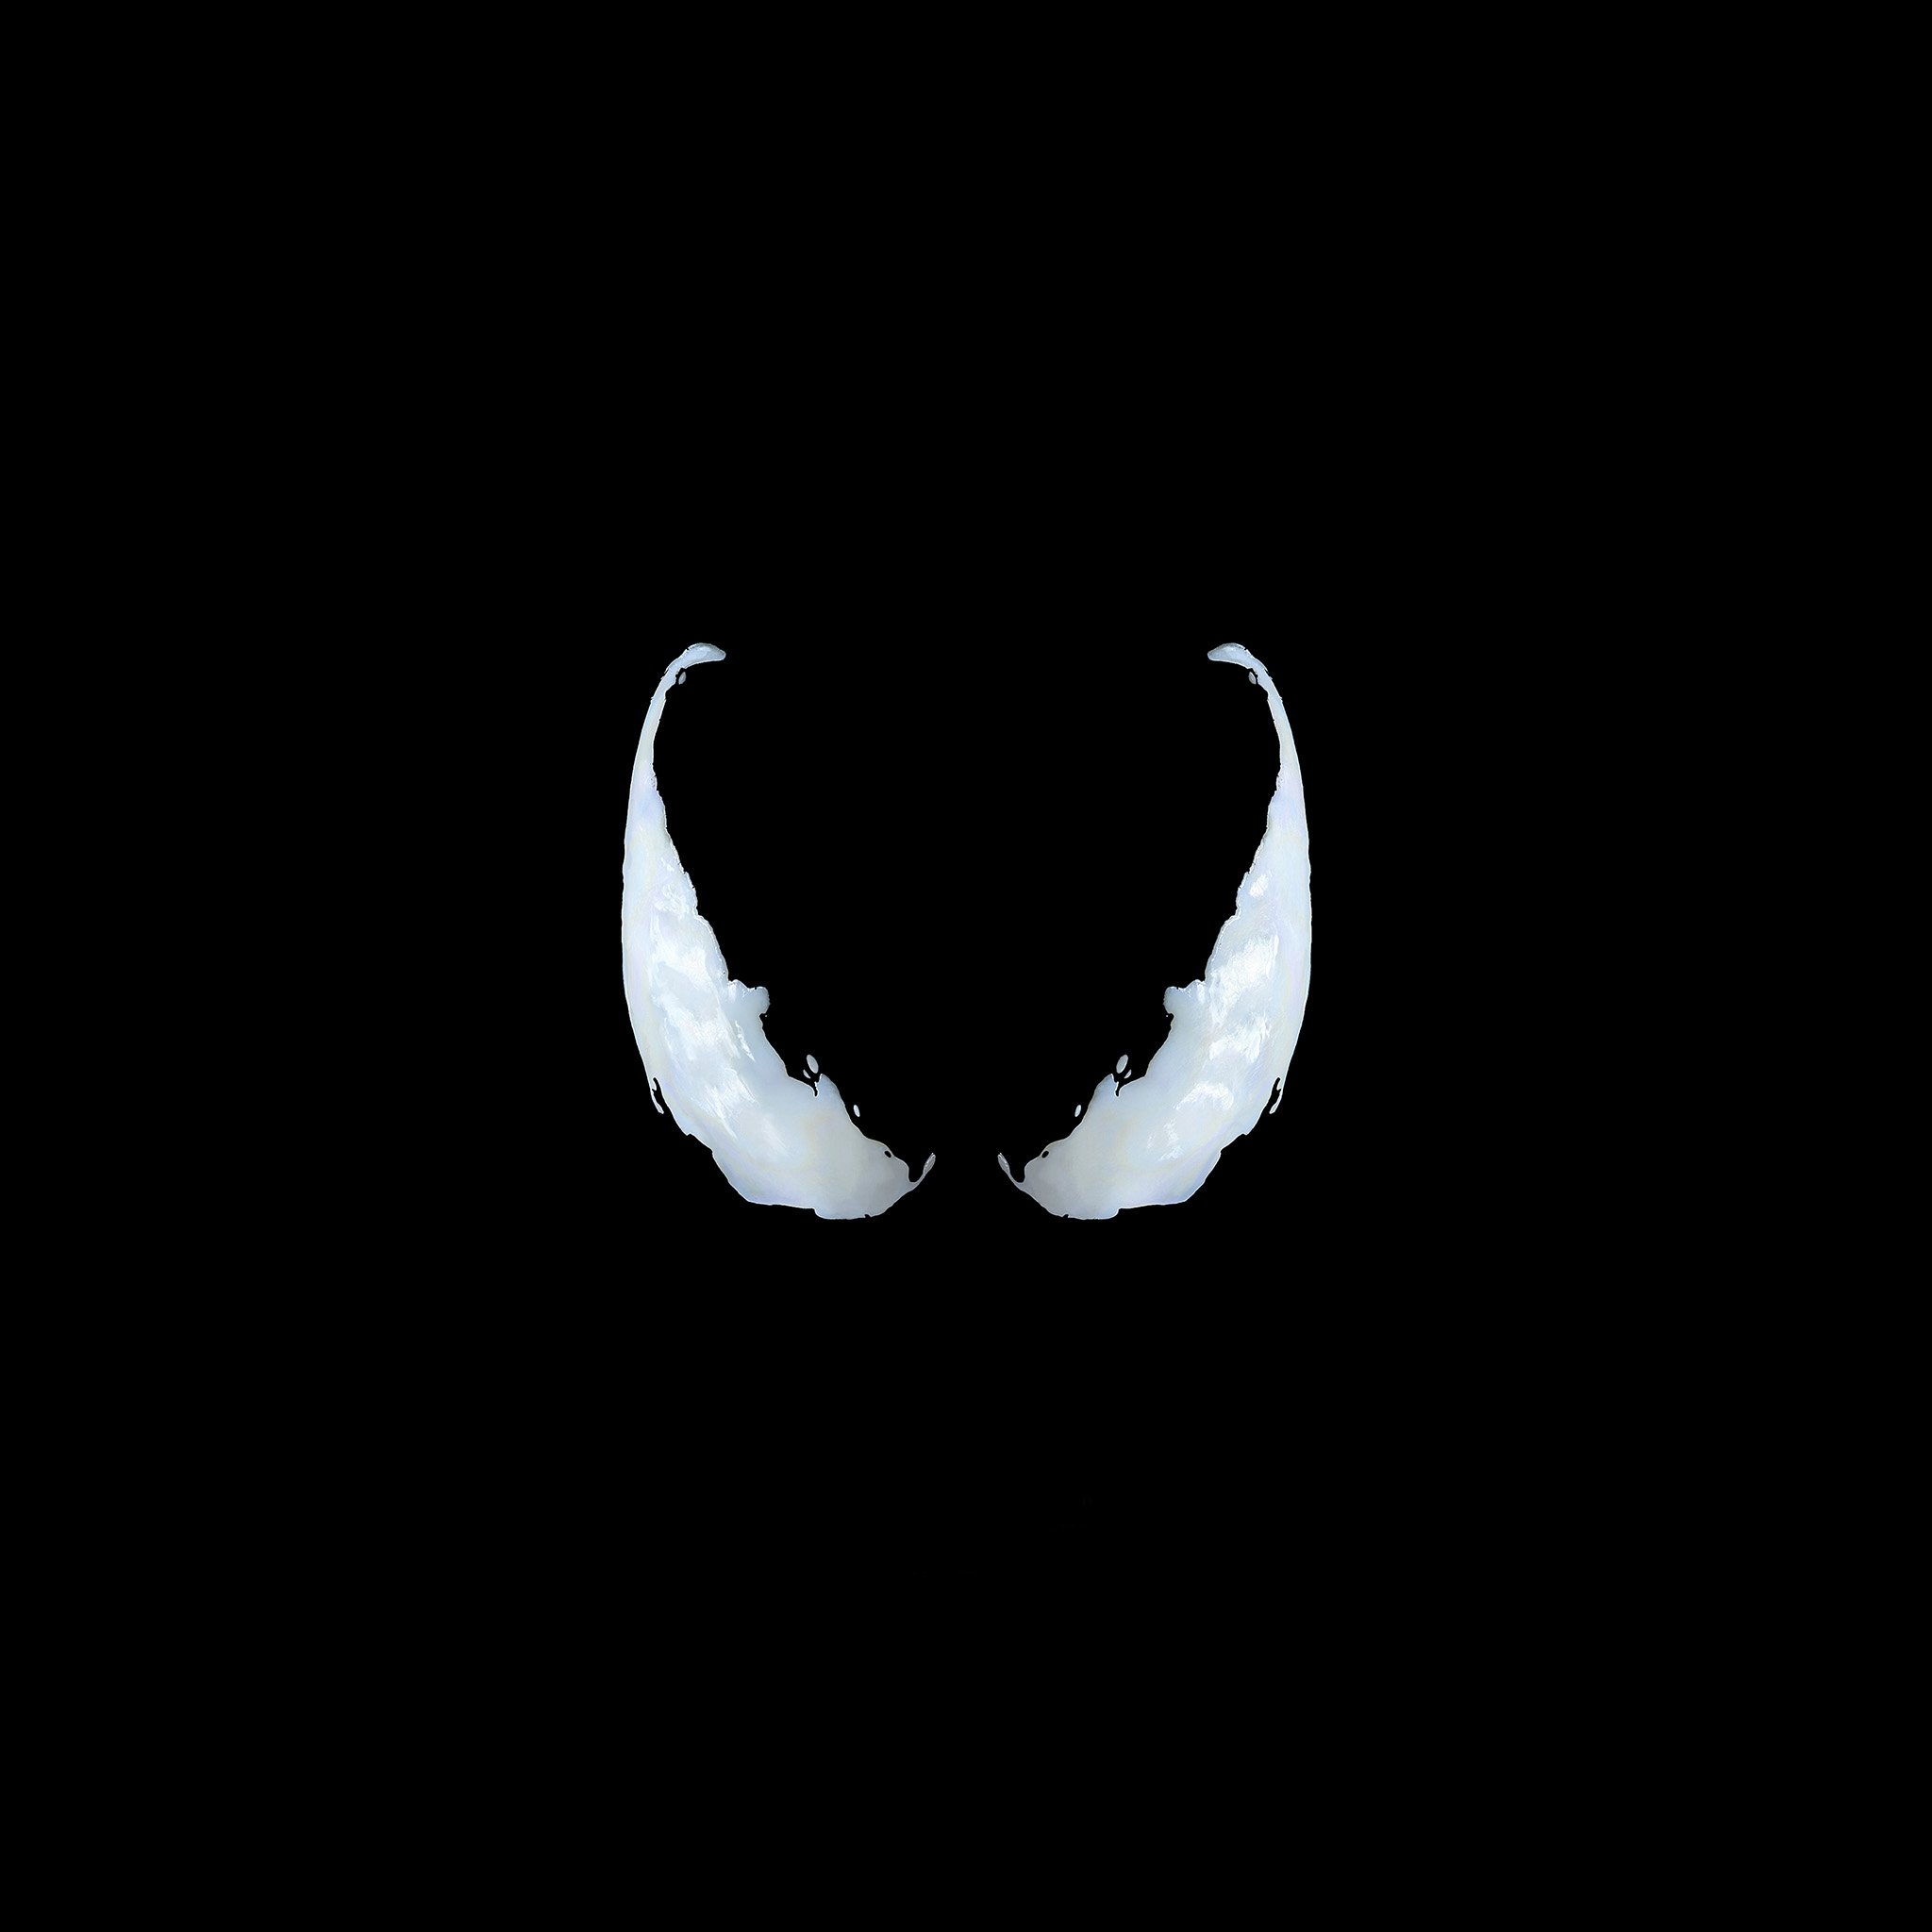 Android wallpaper. marvel venom logo dark eye art simple minimal